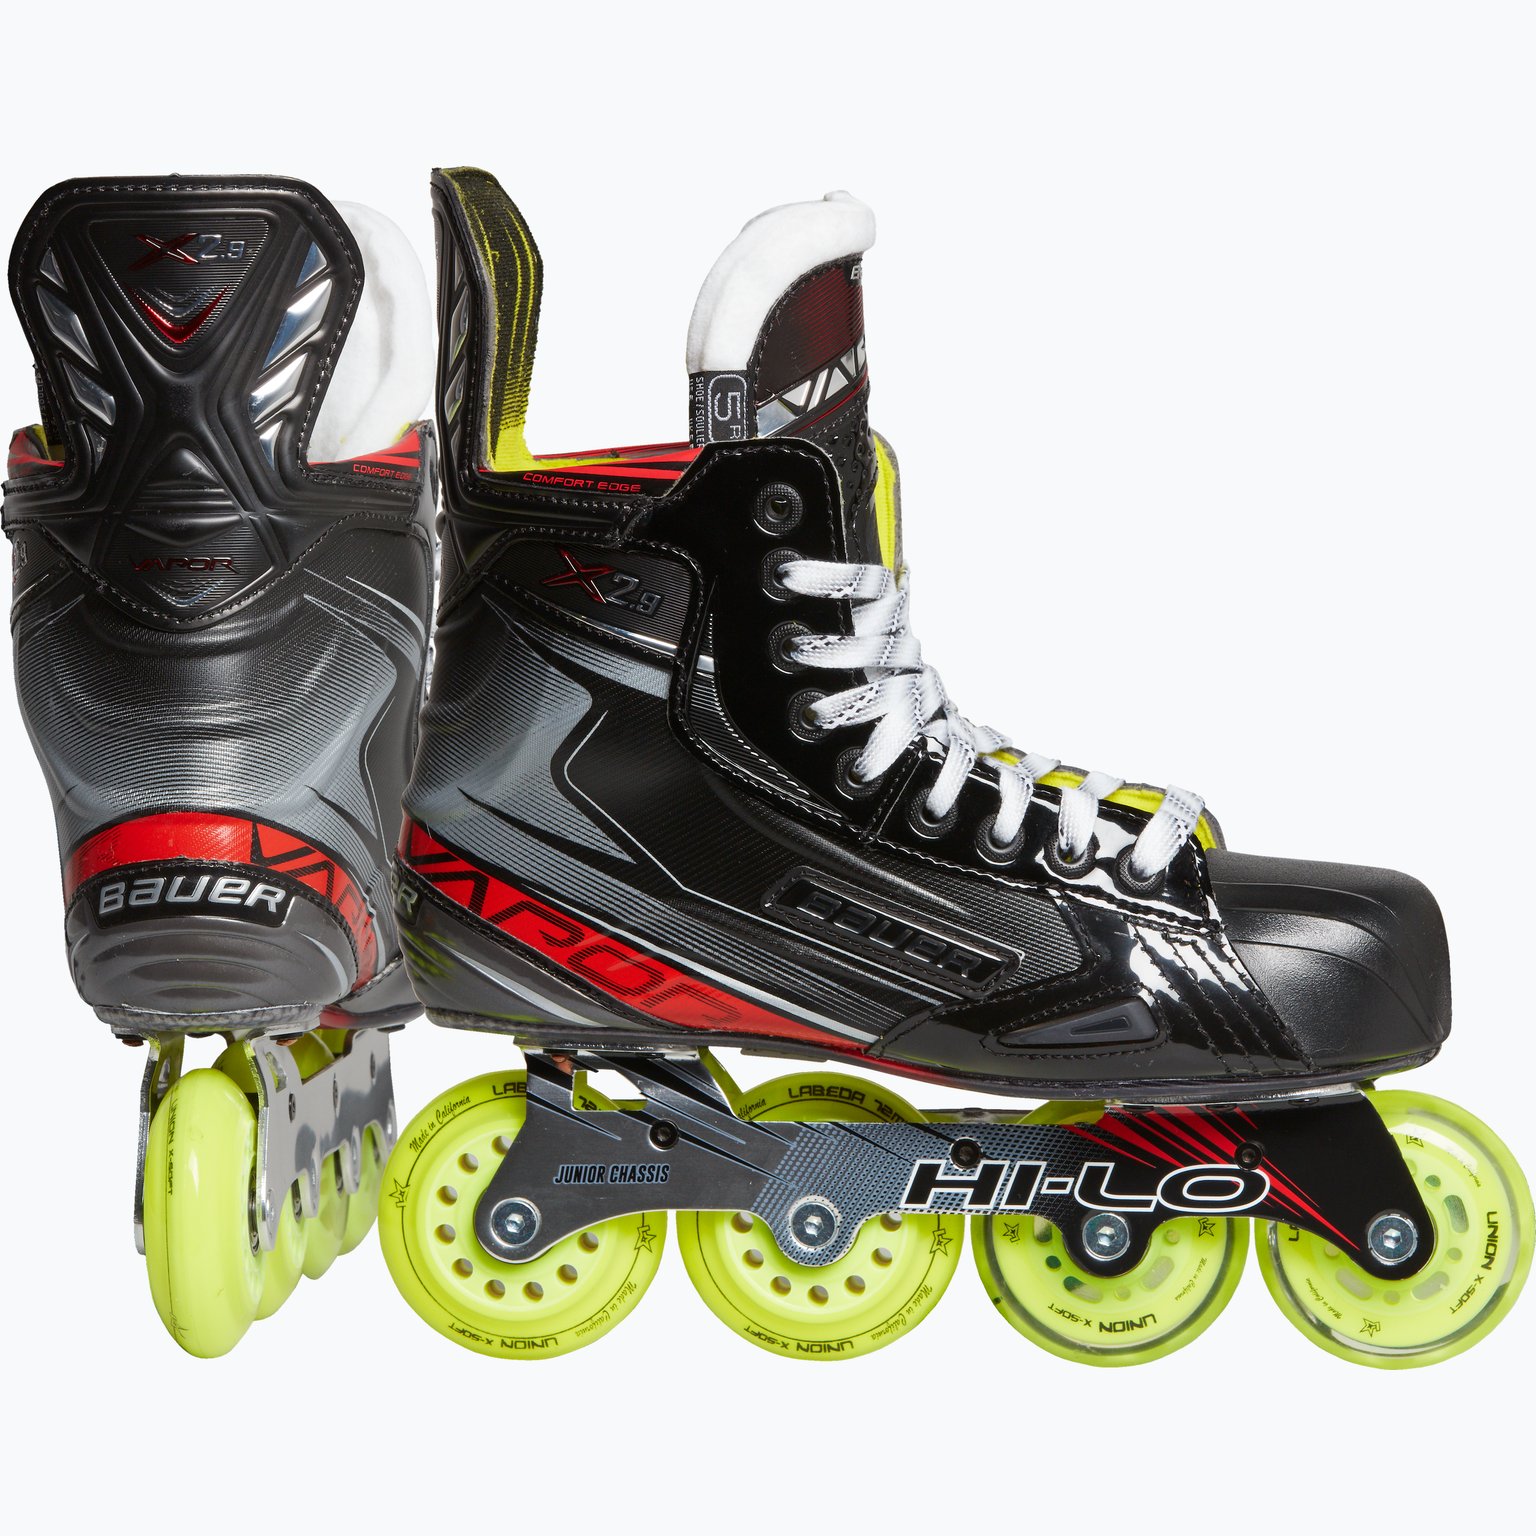 RH Vapor x2.9 Skate JR hockeyinlines